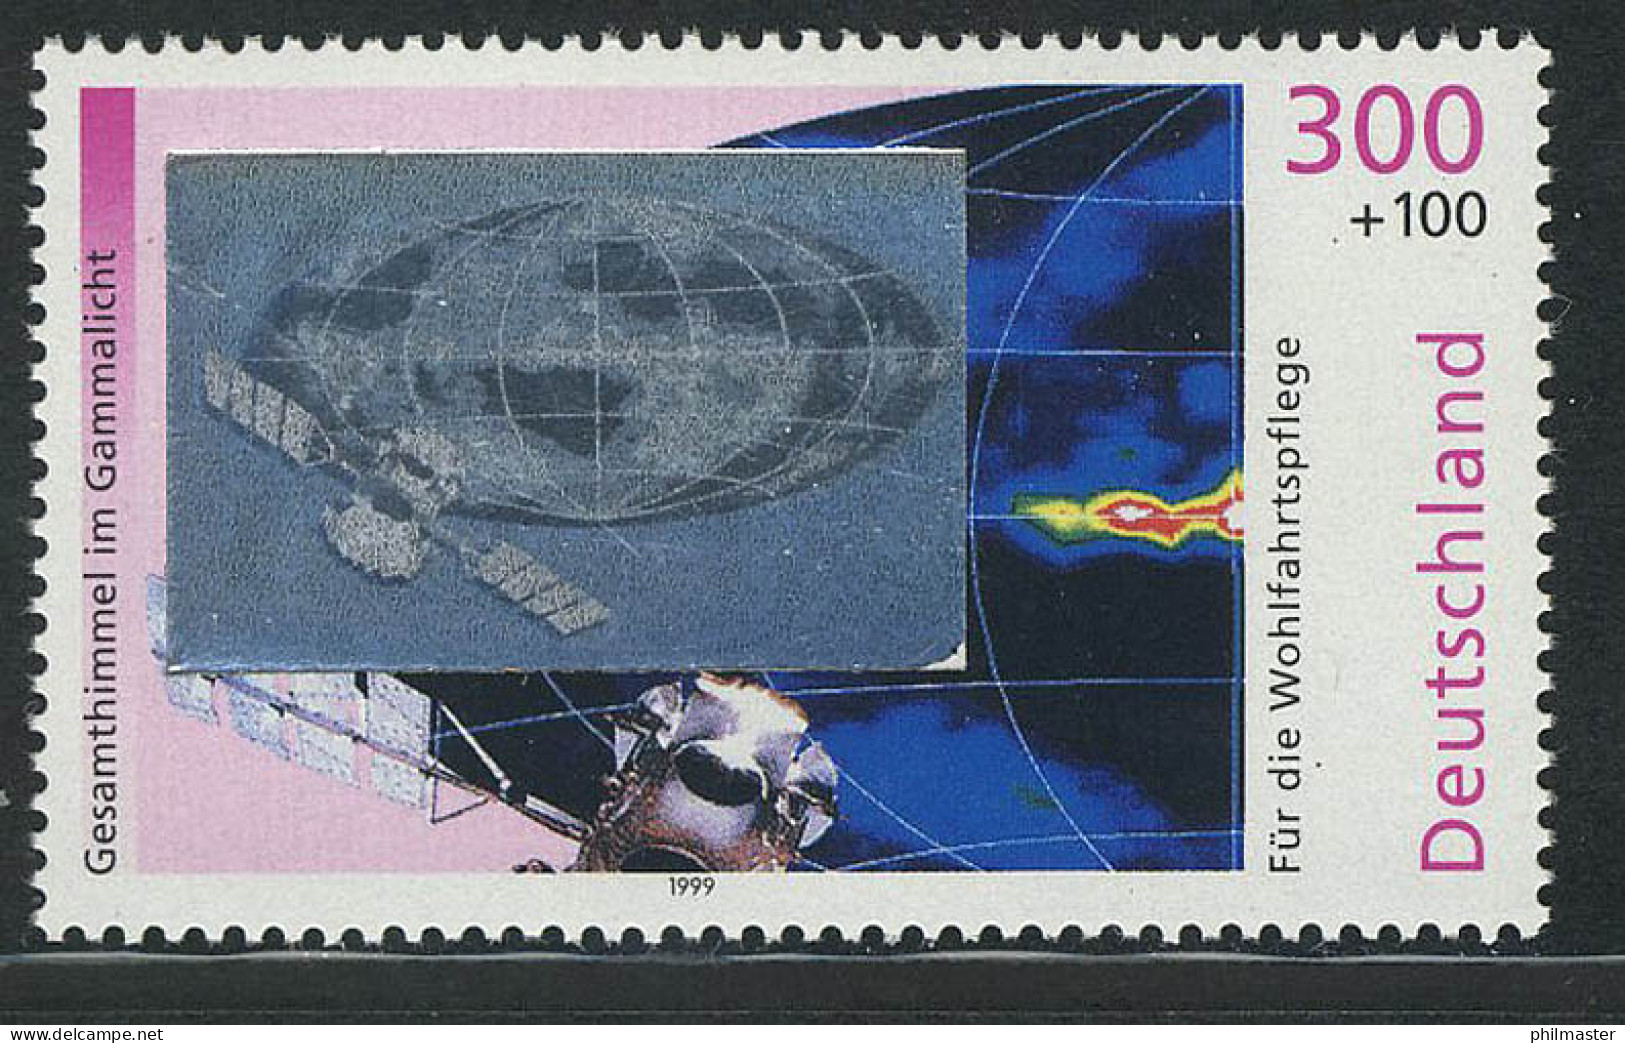 2081 Kosmos Gammastrahlung, Mit Hologramm Auf Der Marke, Postfrisch ** - Hologramas